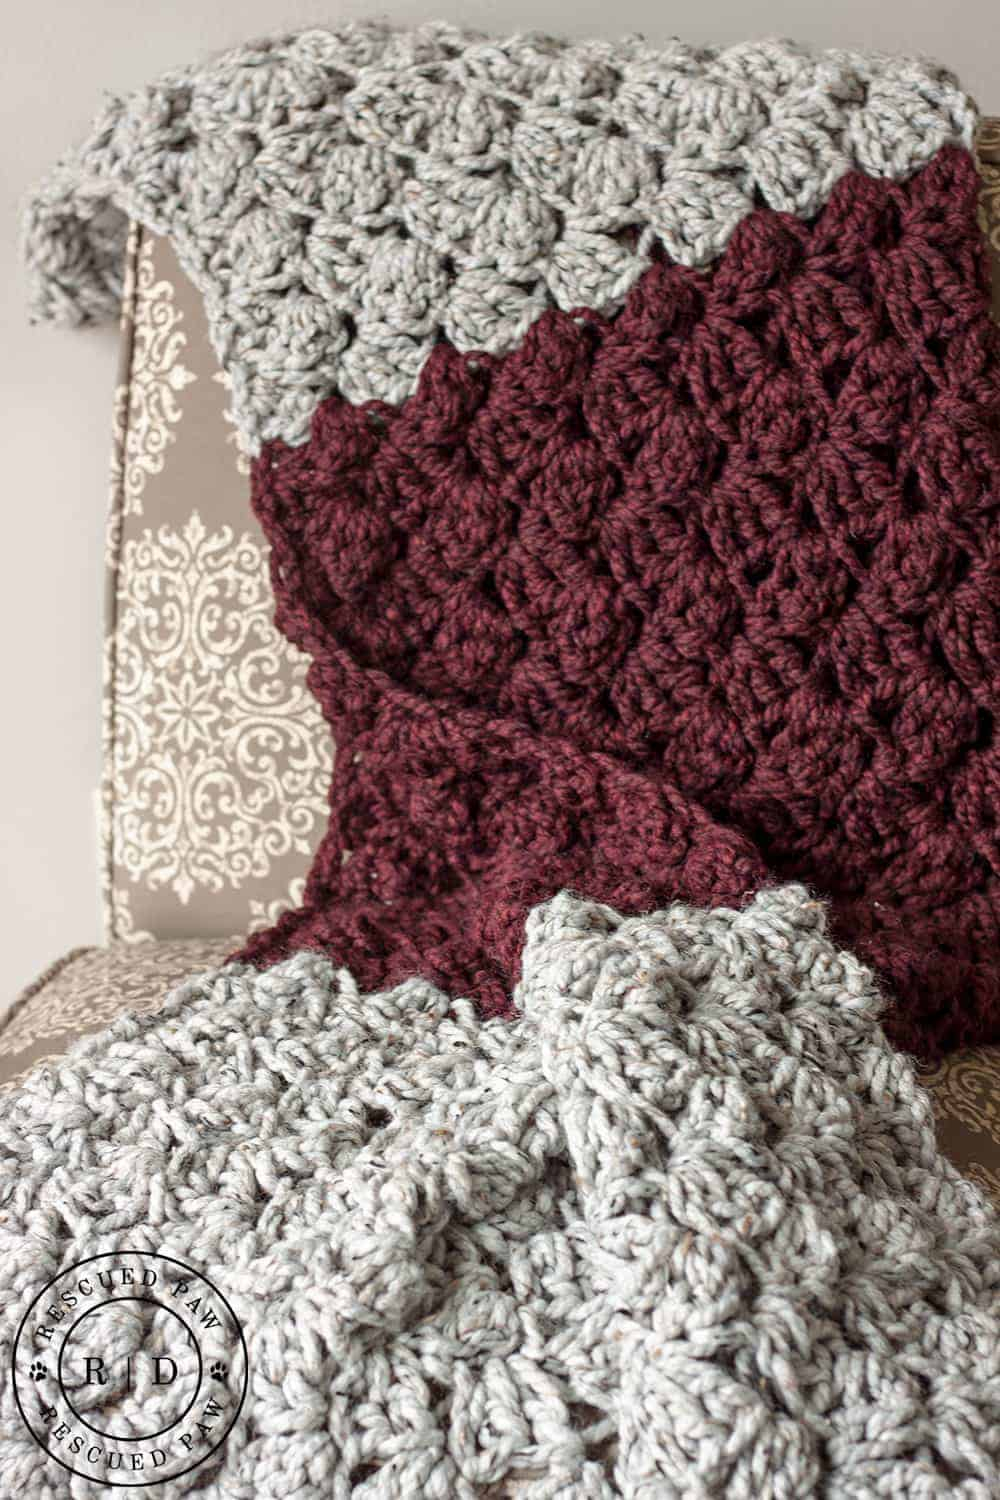 Crochet Pattern Free Charlotte Crochet Blanket Pattern Rescued Paw Designs Crochet